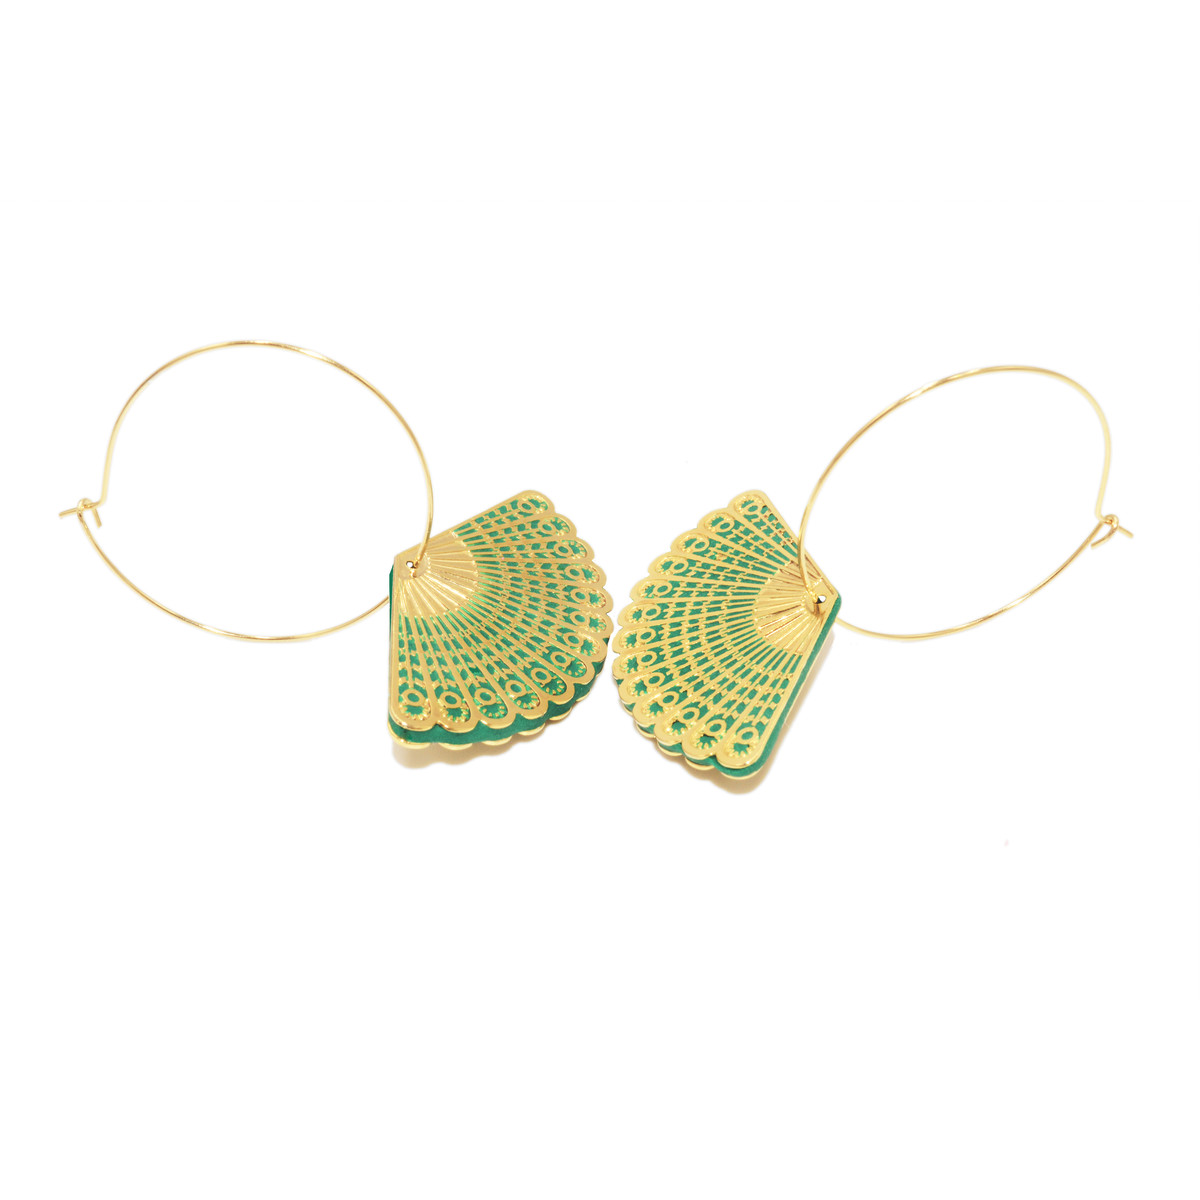 Boucles d'oreilles créoles avec médaille éventail colorée doré à l 'or fin - vue 2